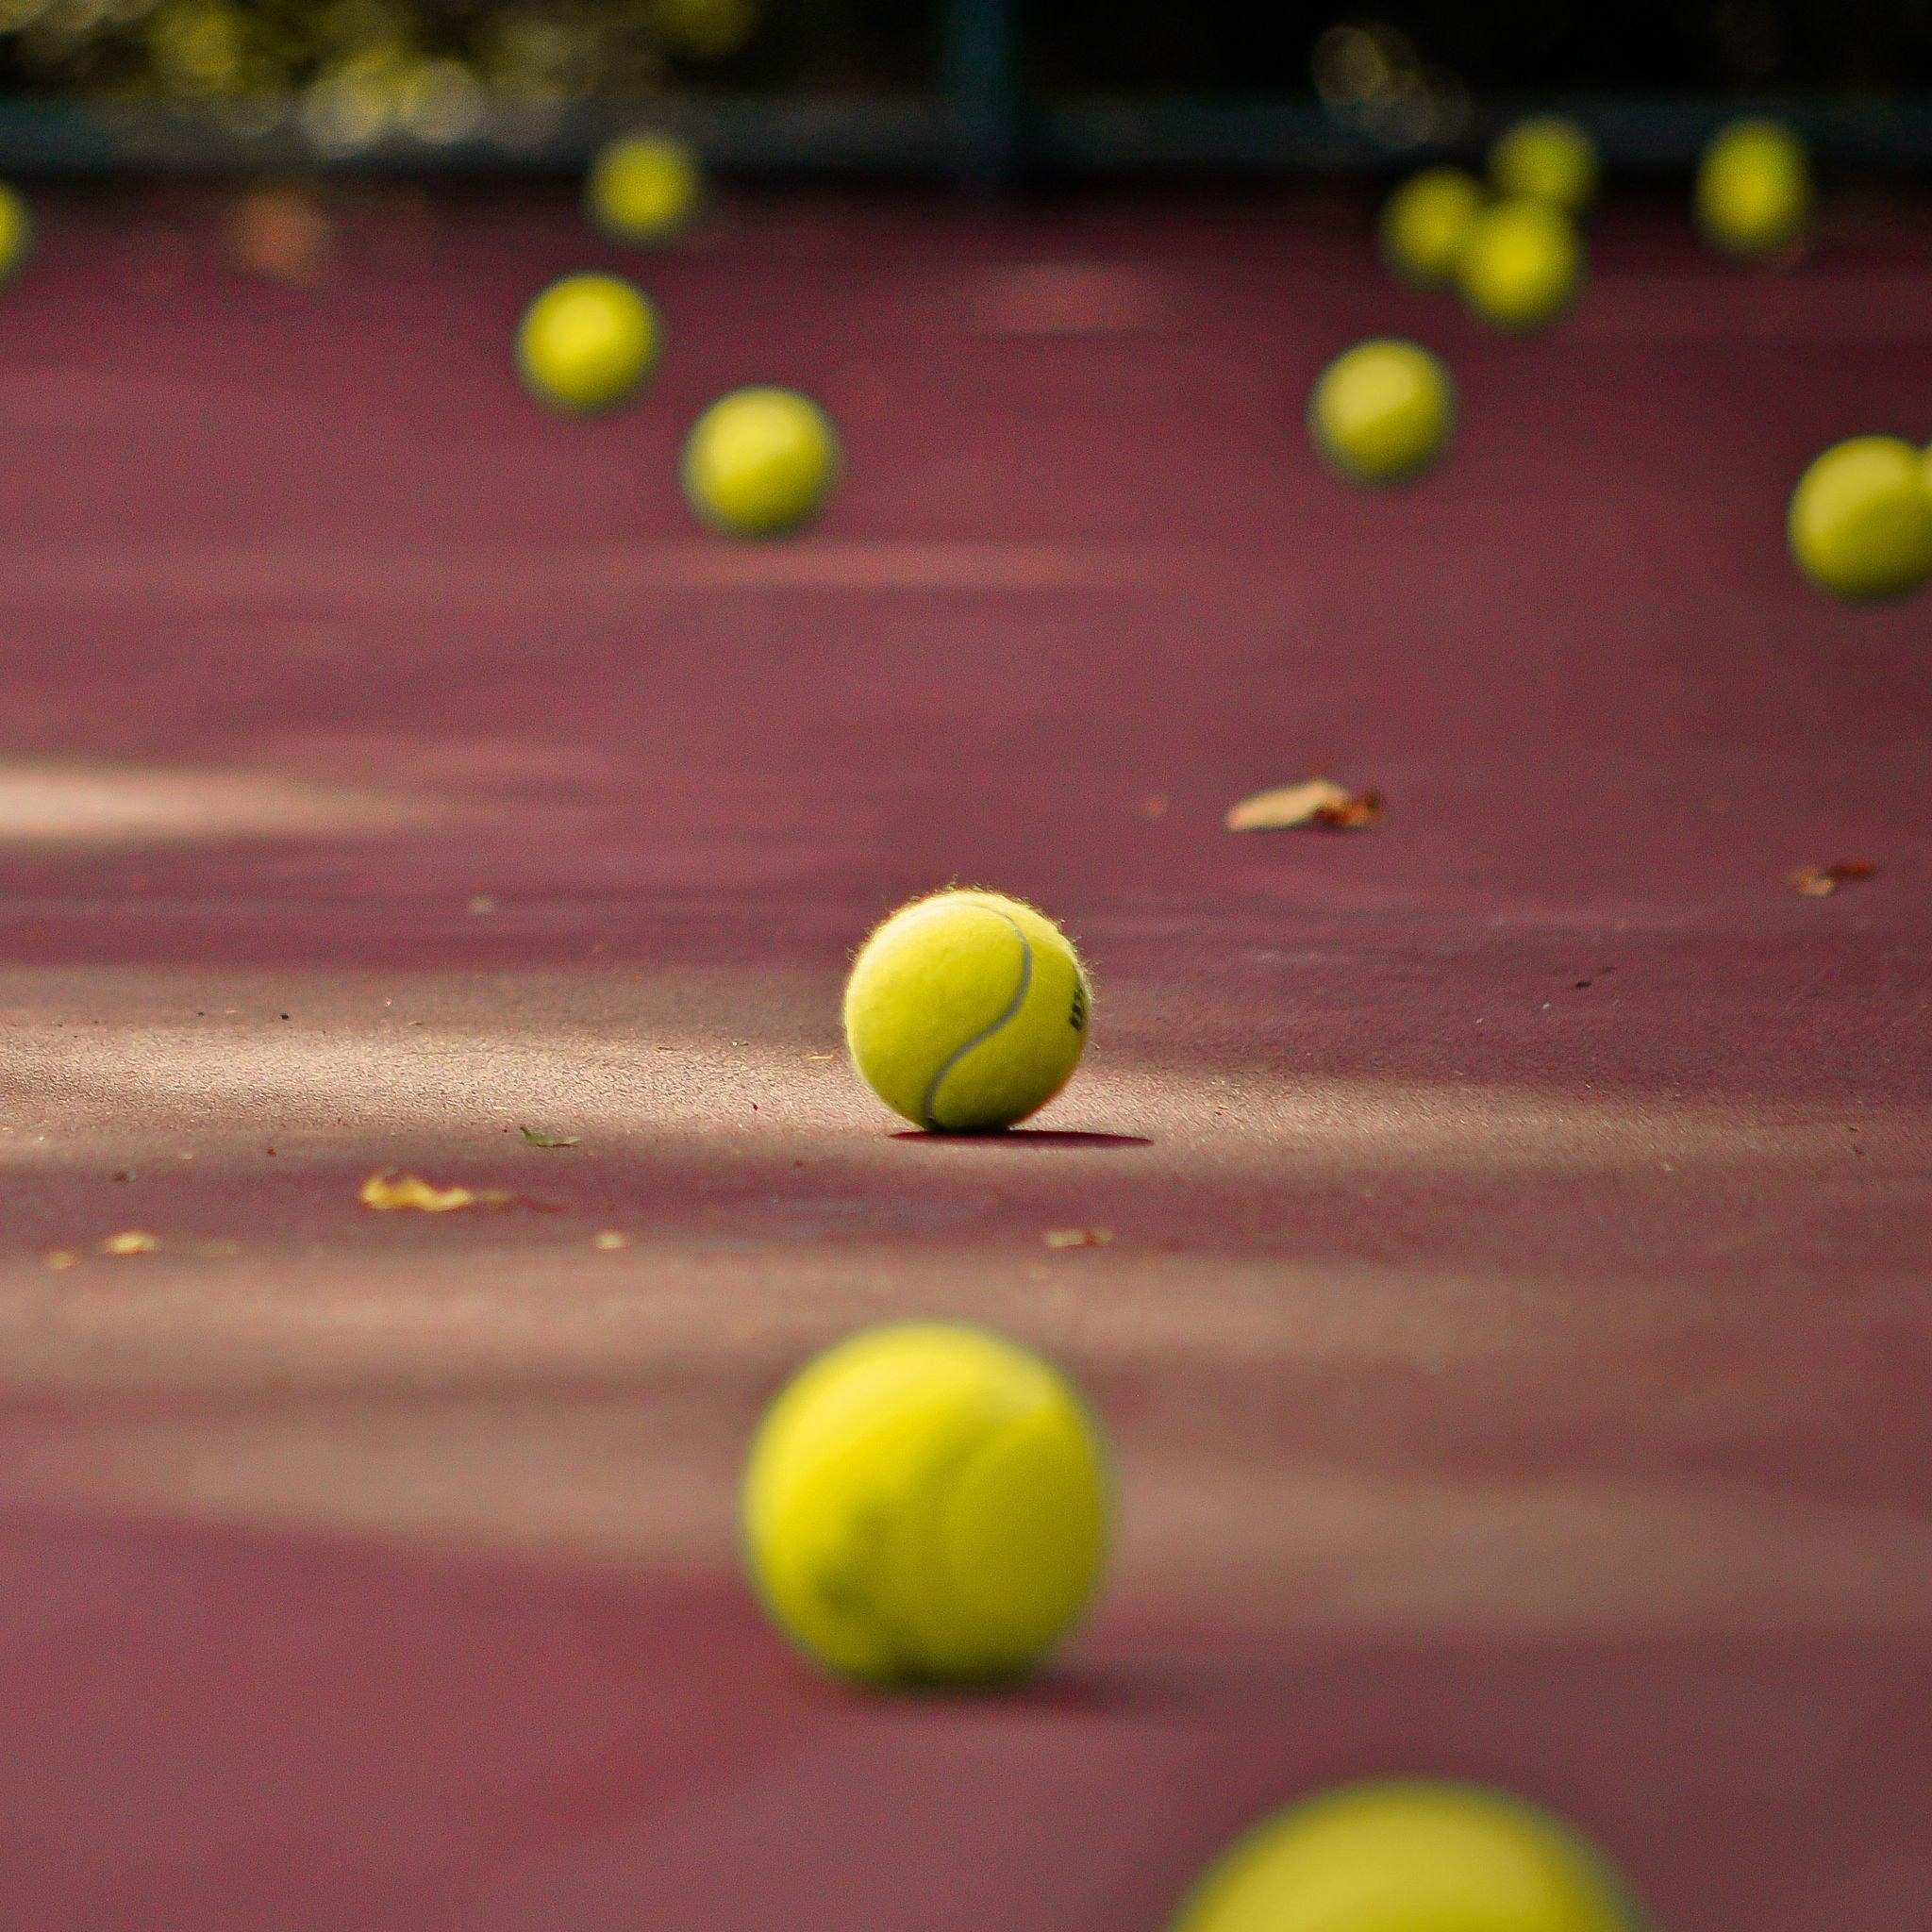 Игры с теннисными шариками. Теннисный мяч. Теннисный корт. Теннисный мяч красивый. Теннисный мяч на корте.